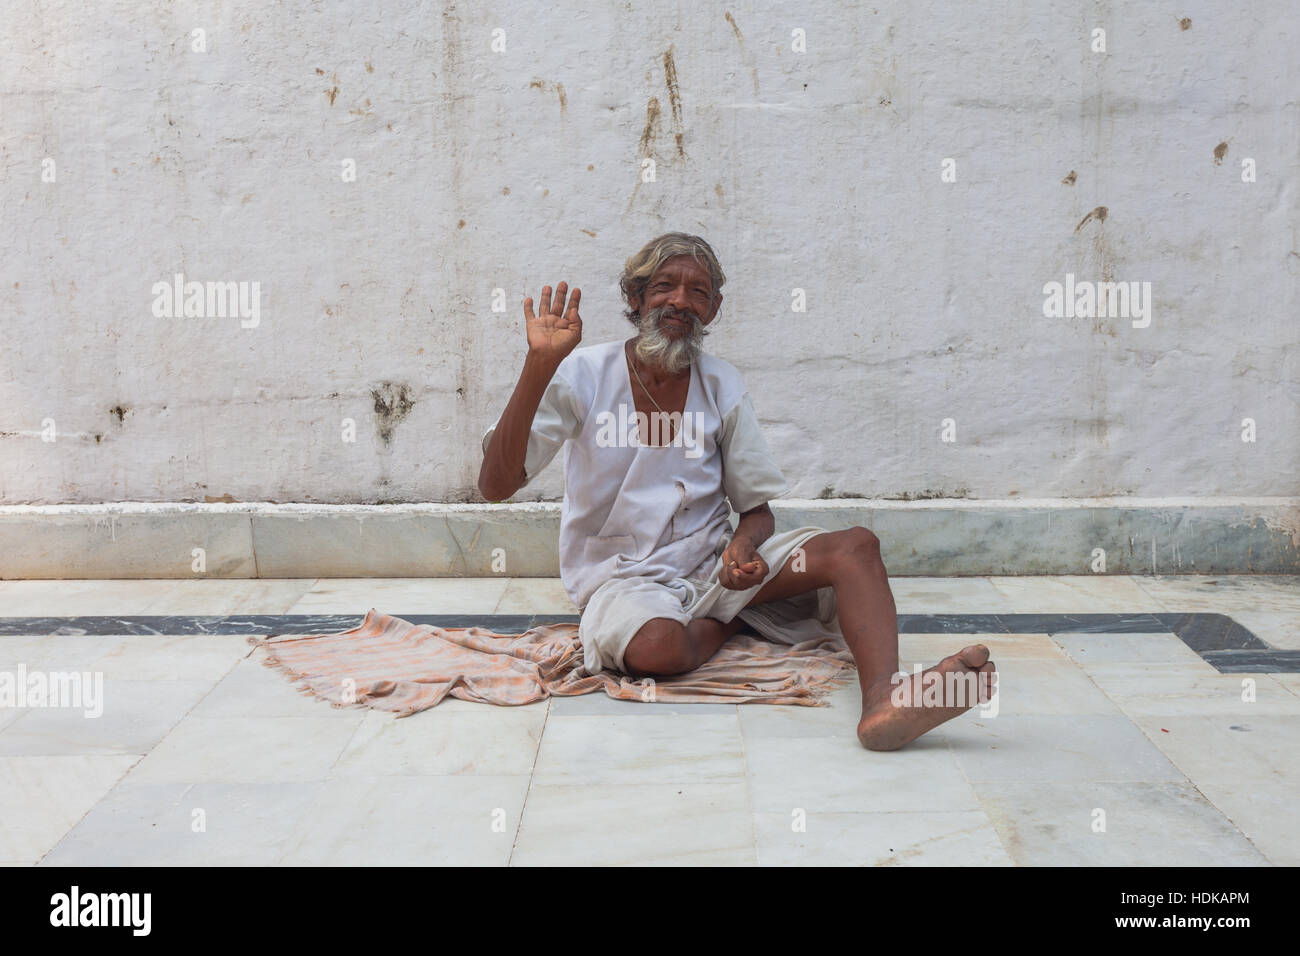 Indischer Mann freundliche Geste zeigen, am Boden, Rajasthan, Indien Stockfoto